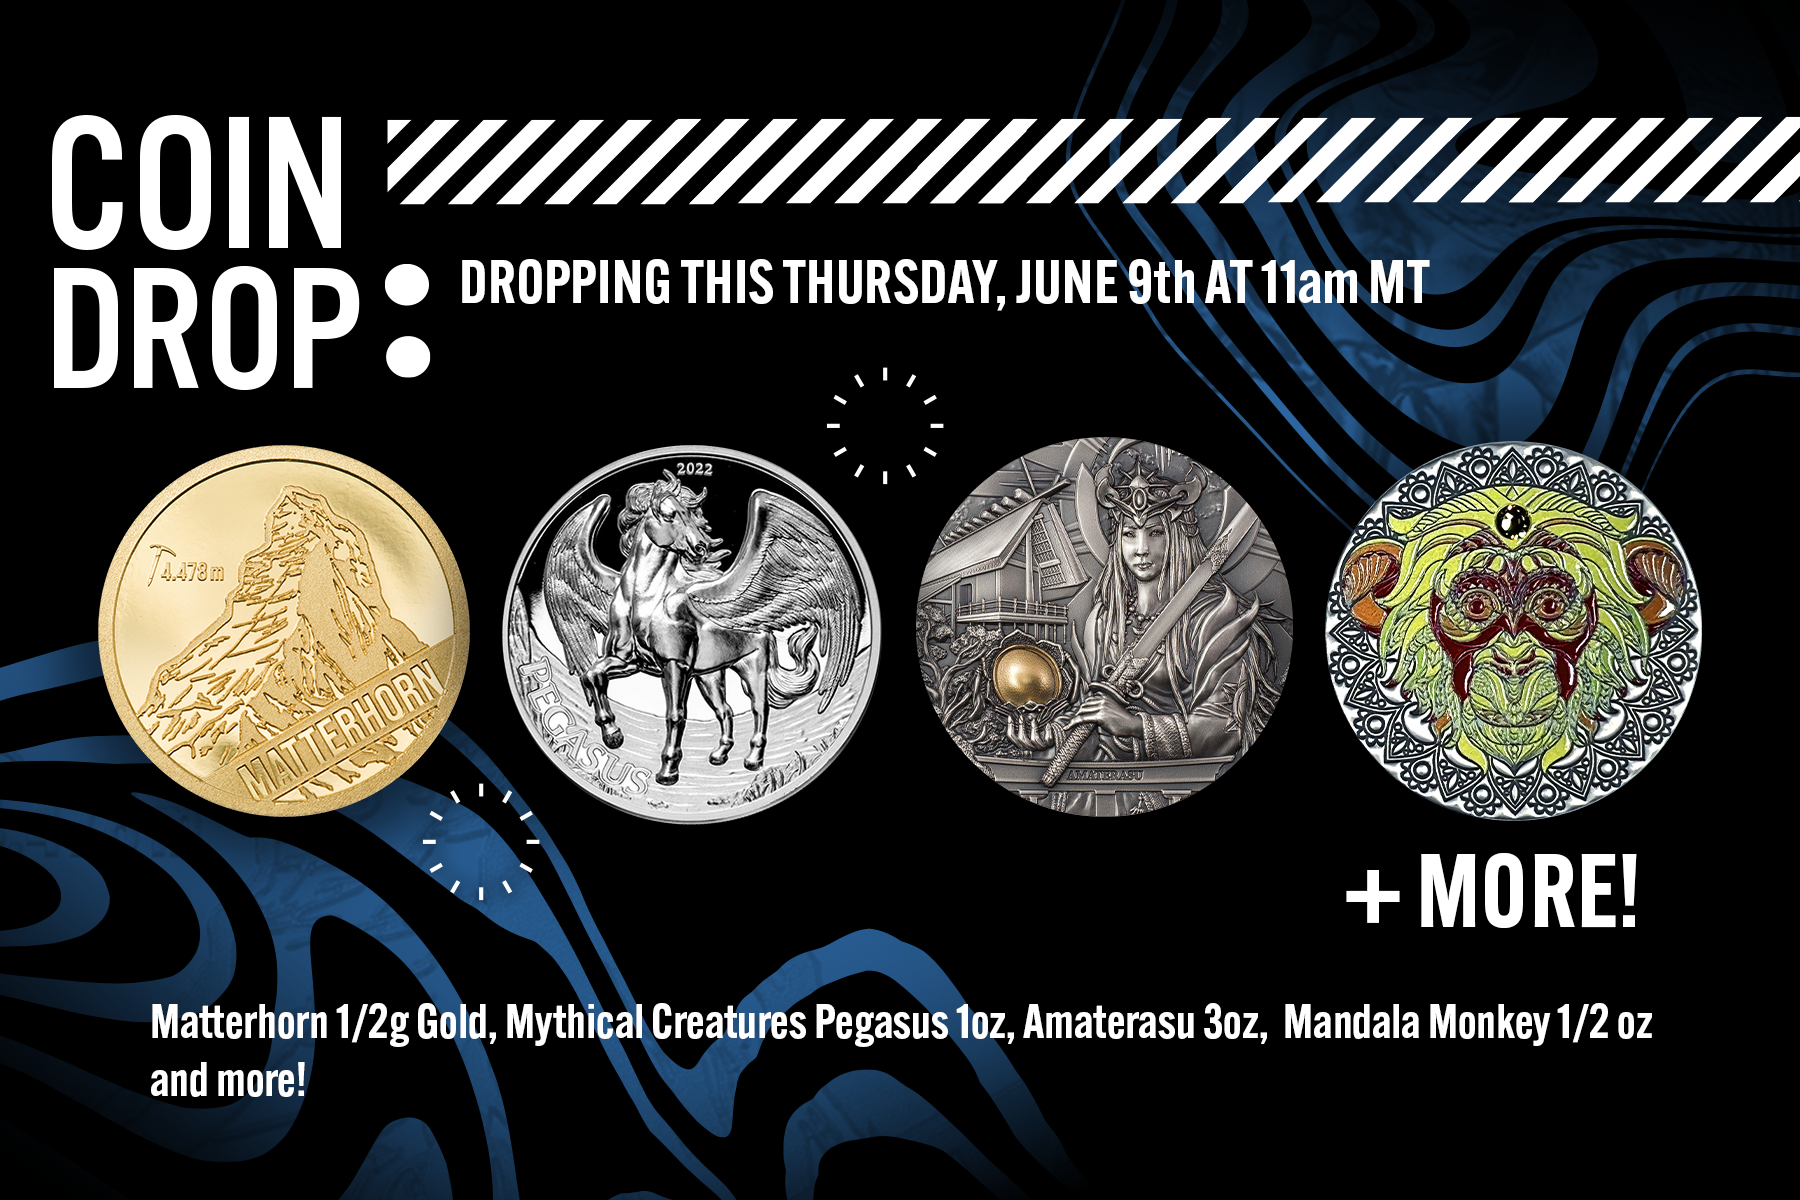 Coin Drop This Thursday!